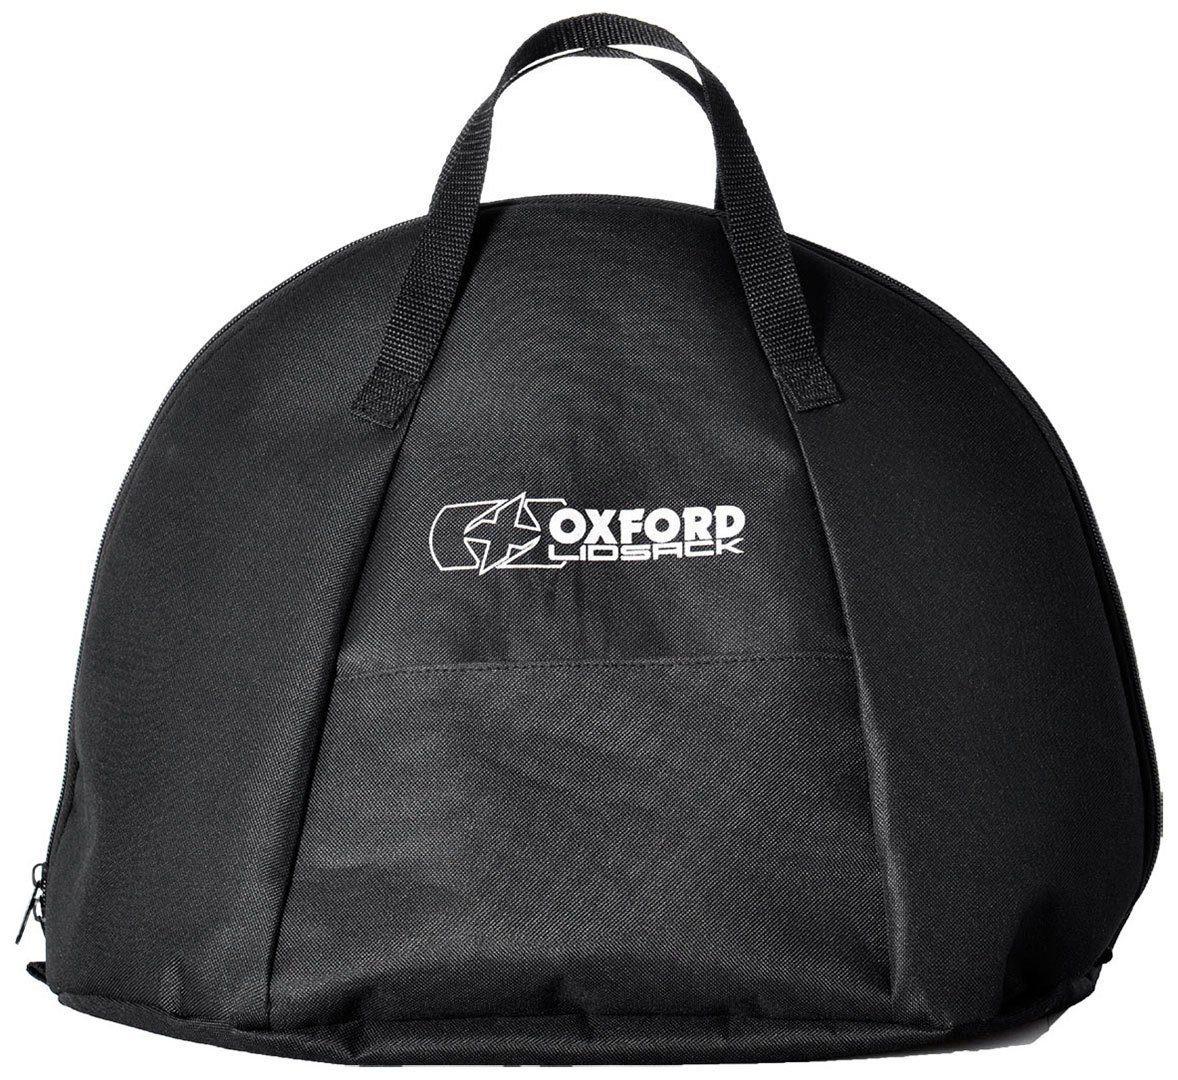 OXFORD Fahrradrucksack Lidsack Helmtasche